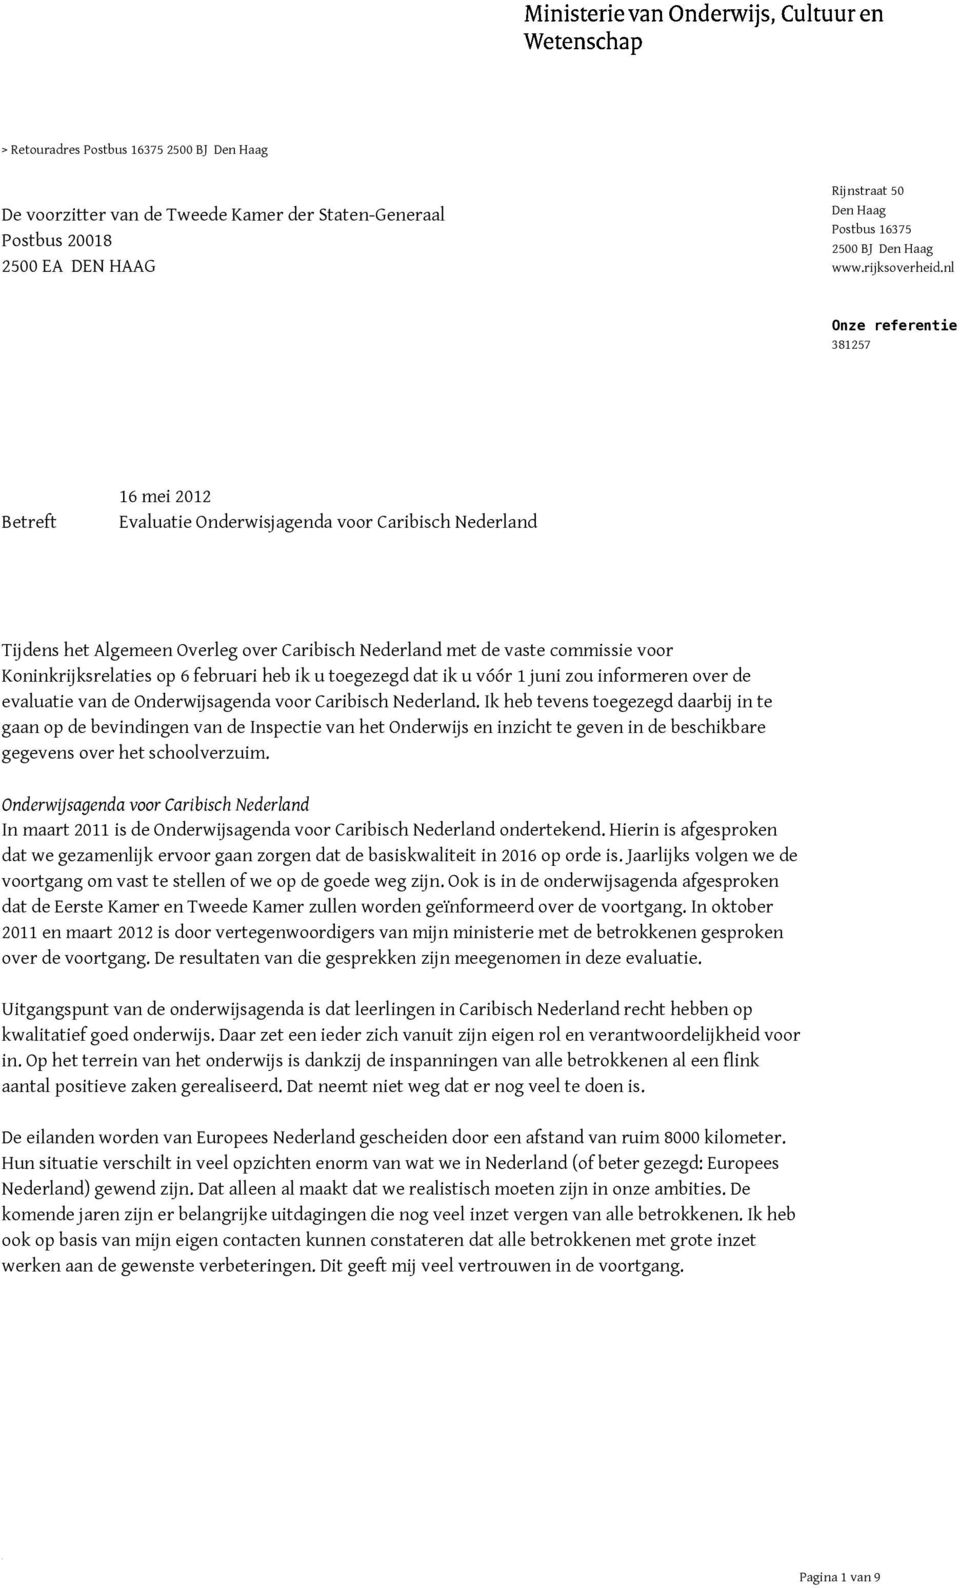 nl Onze referentie 381257 Betreft 16 mei 2012 Evaluatie Onderwisjagenda voor Caribisch Nederland Tijdens het Algemeen Overleg over Caribisch Nederland met de vaste commissie voor Koninkrijksrelaties